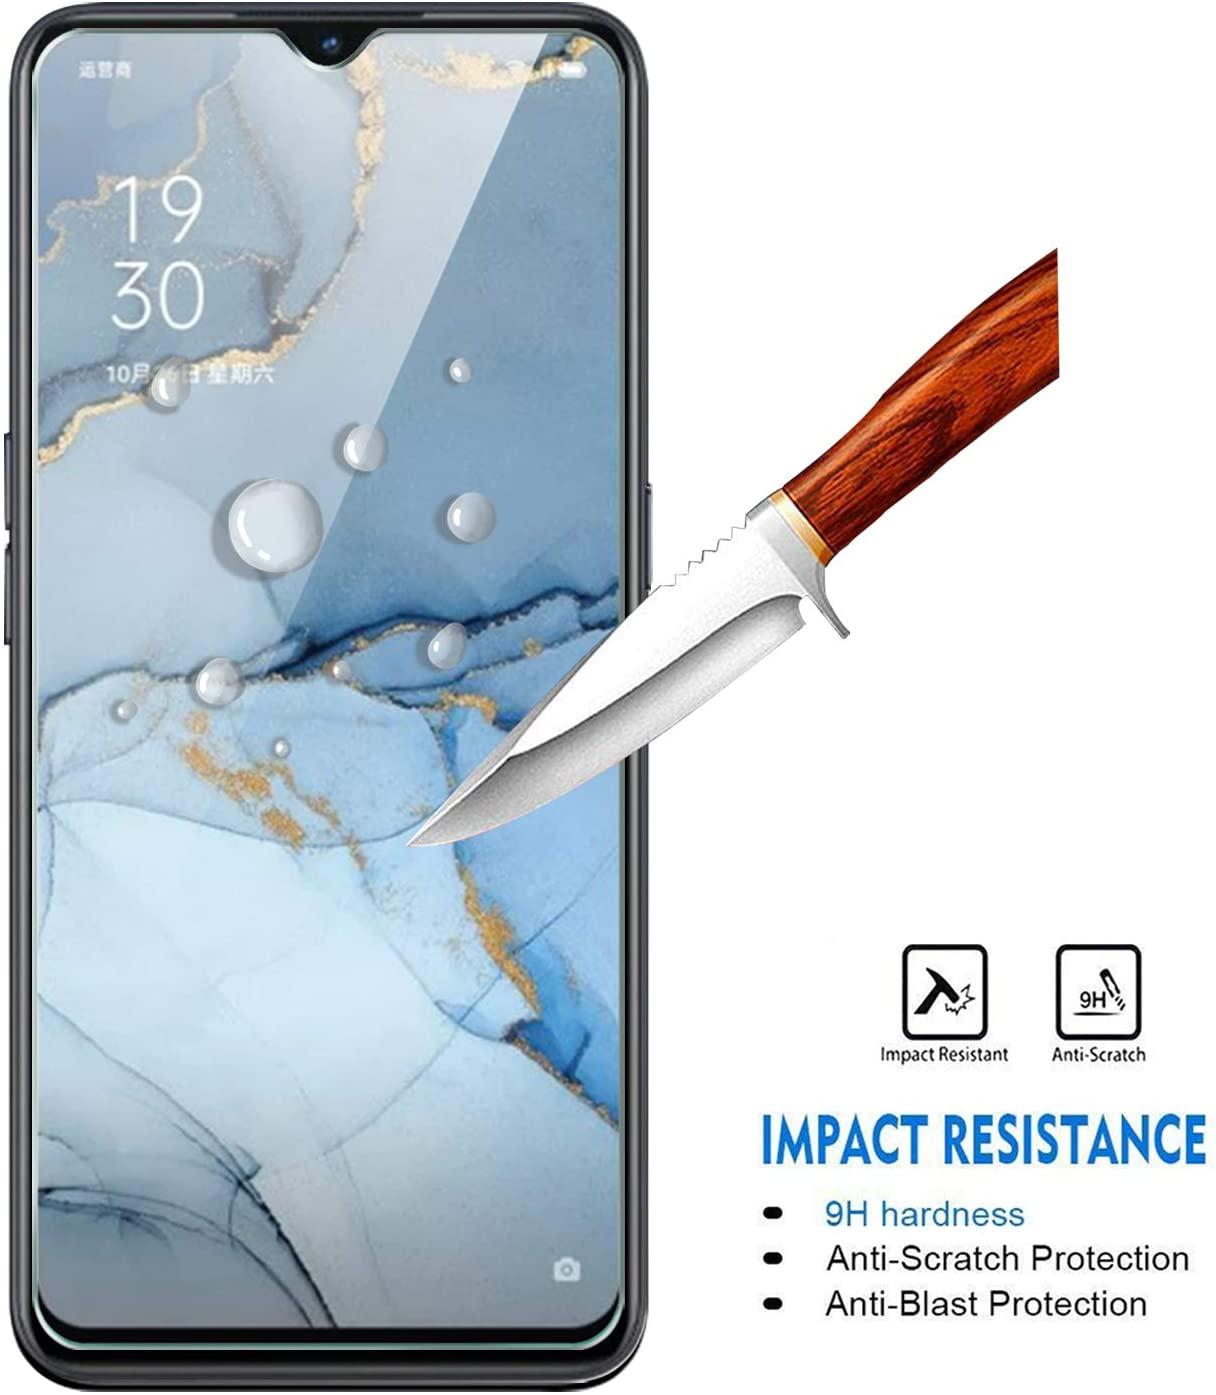 Изображение товара: Защитная пленка для экрана, чехол из закаленного стекла, 99% прозрачная защитная пленка для экрана OPPO, Противоударная пленка